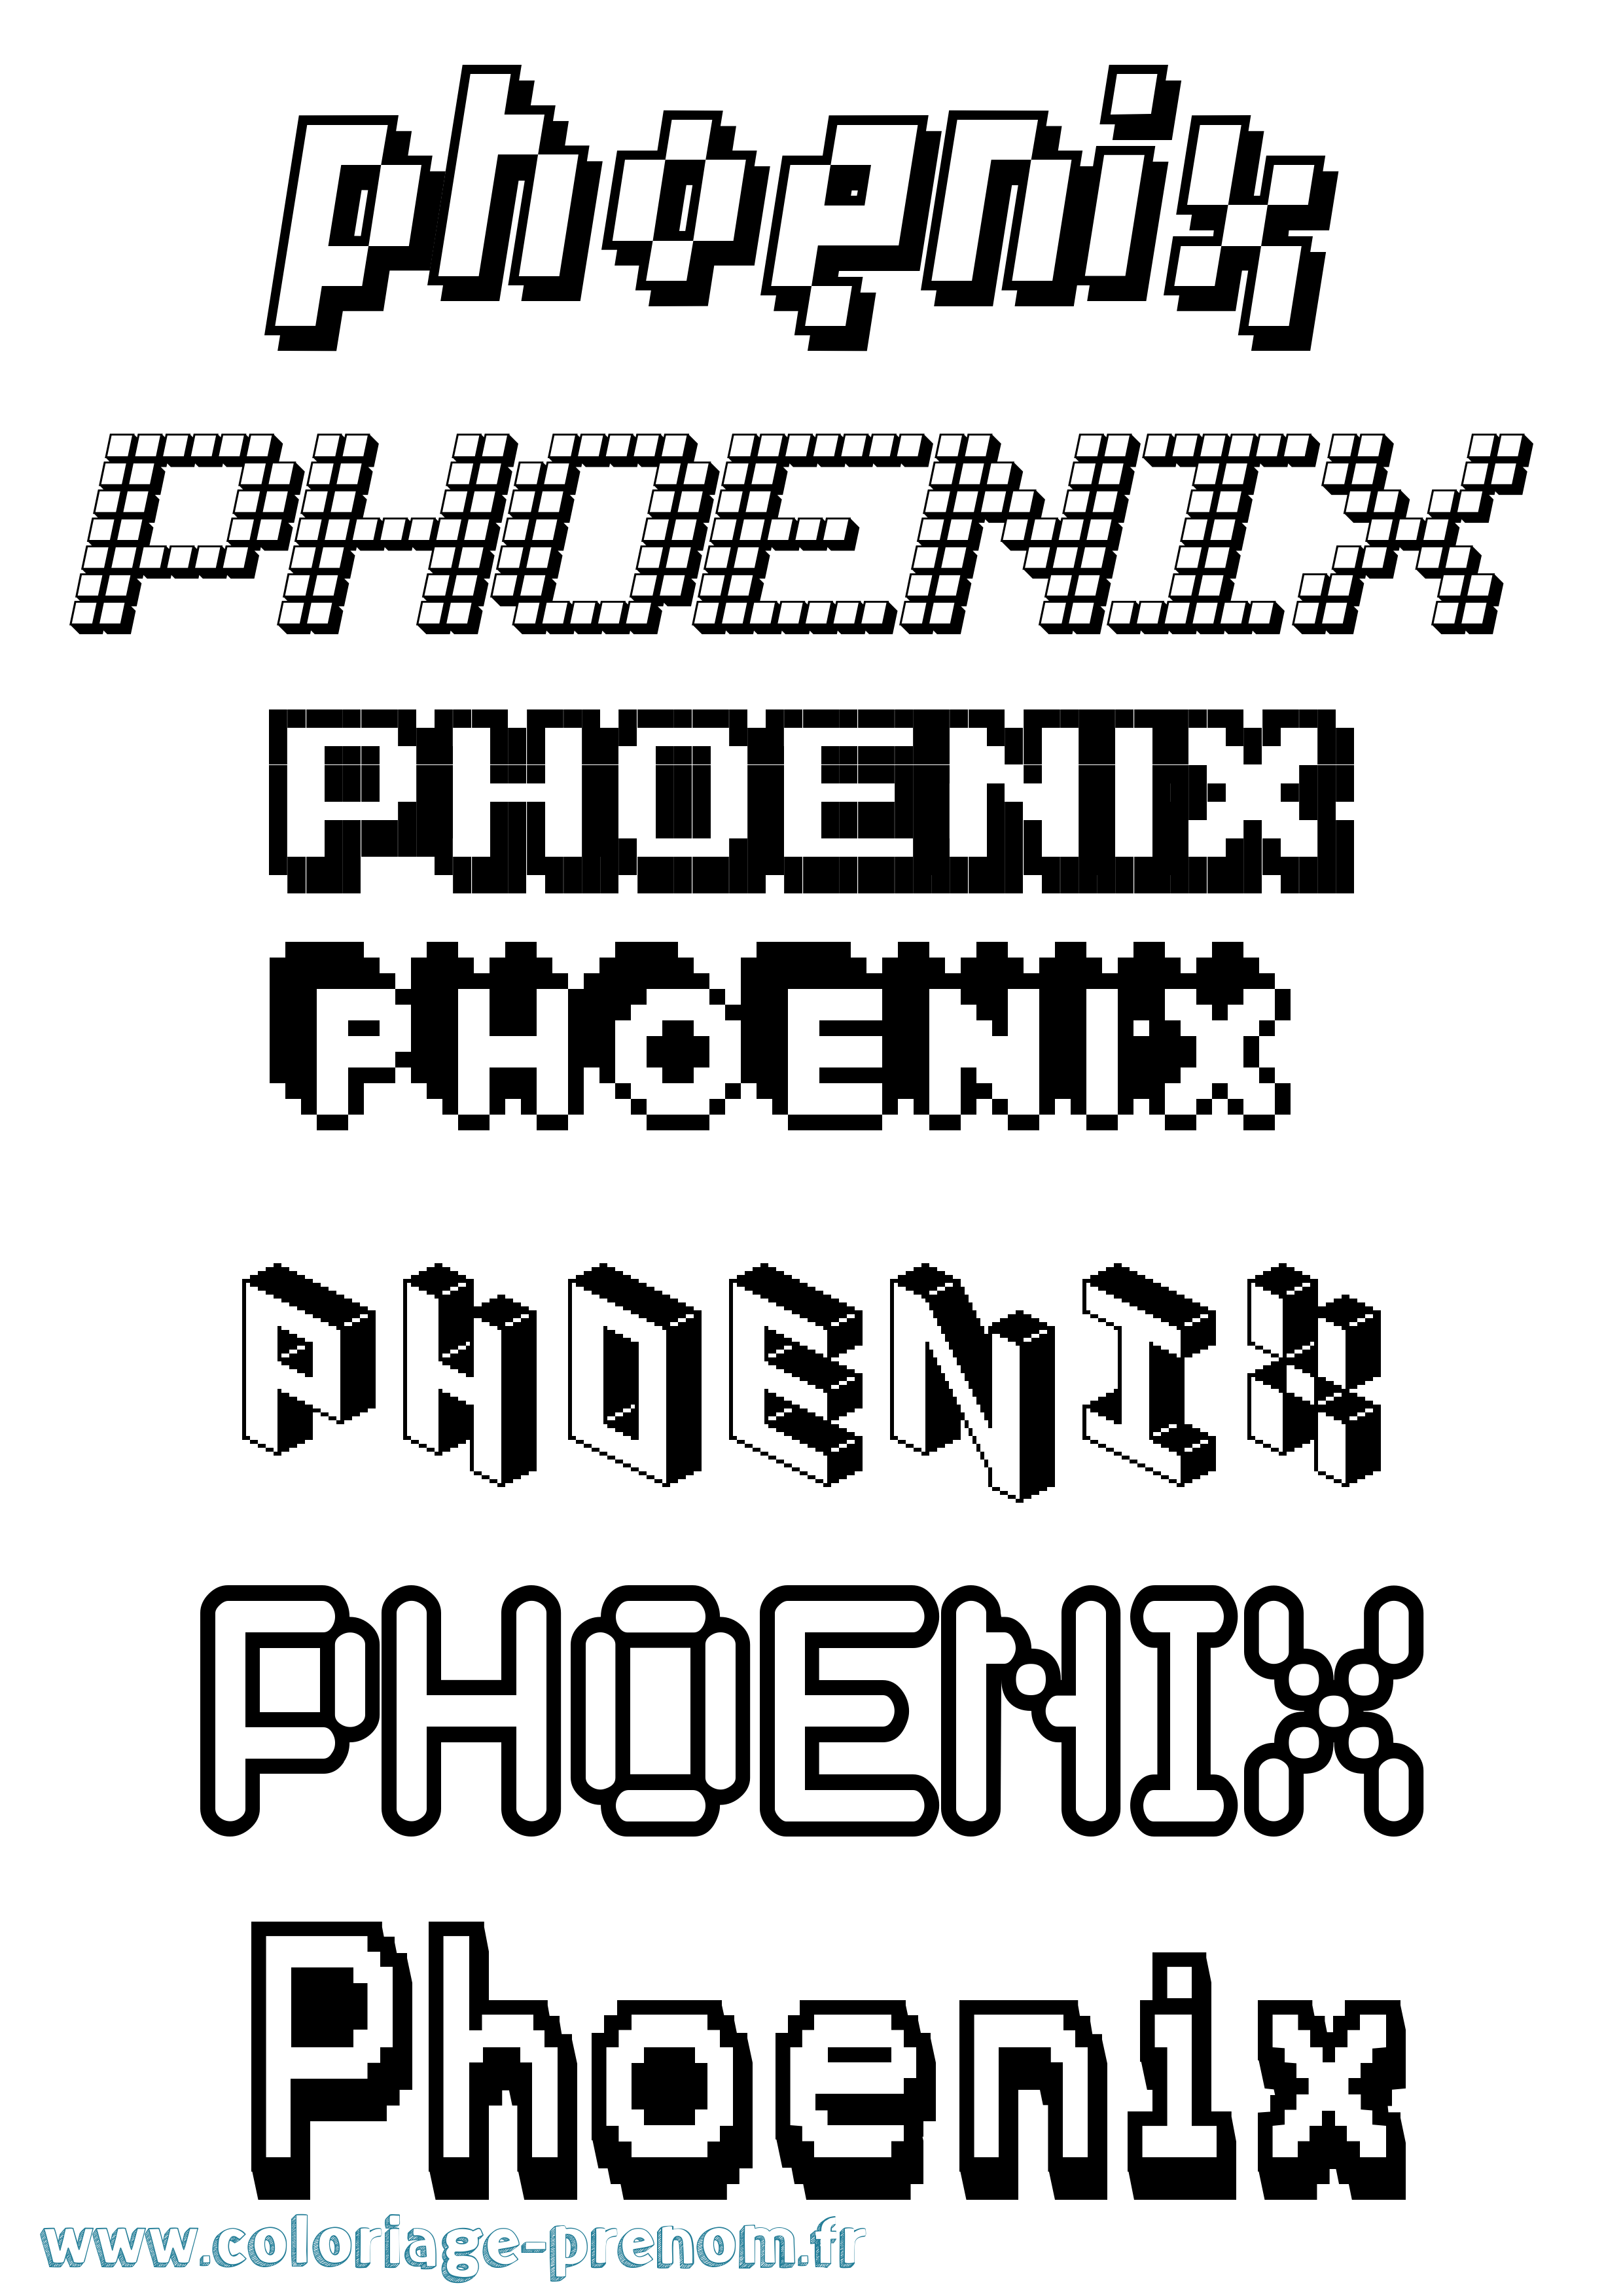 Coloriage prénom Phoenix Pixel